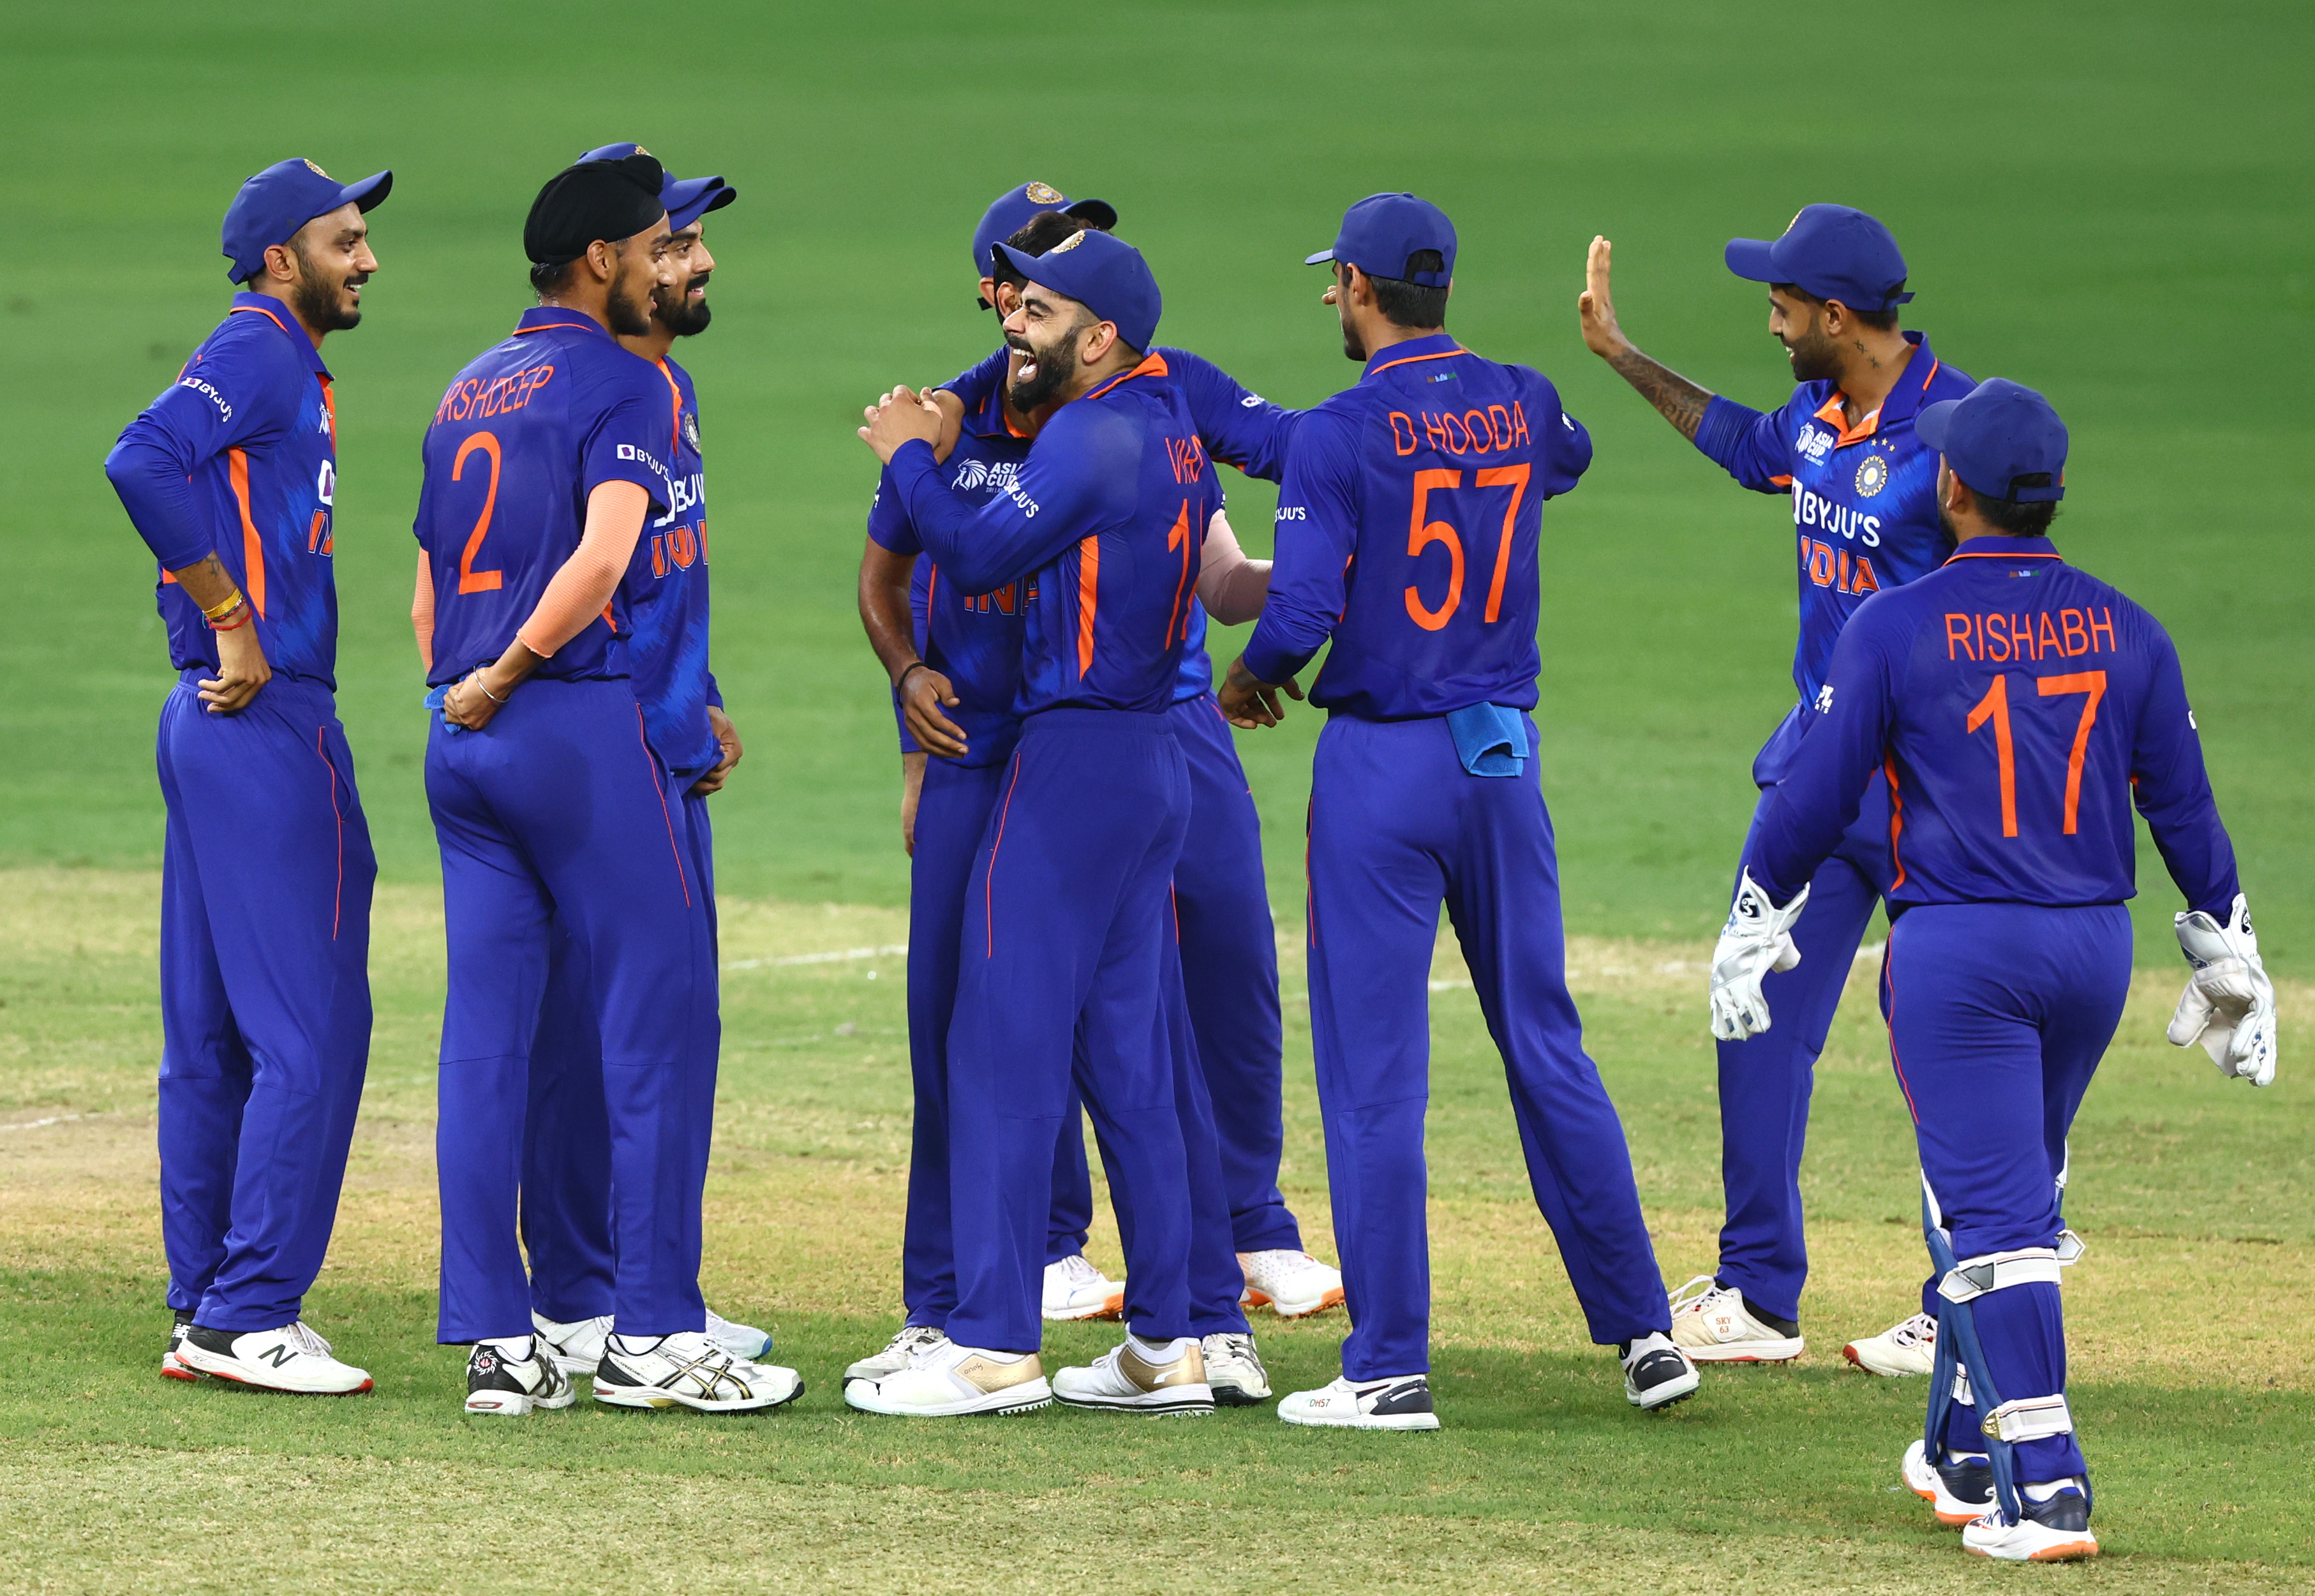 Akram Khan dari Bangladesh mengkritik tim India, ‘tim Rohit Sharma memiliki nama besar tetapi Bangladesh adalah favorit’: